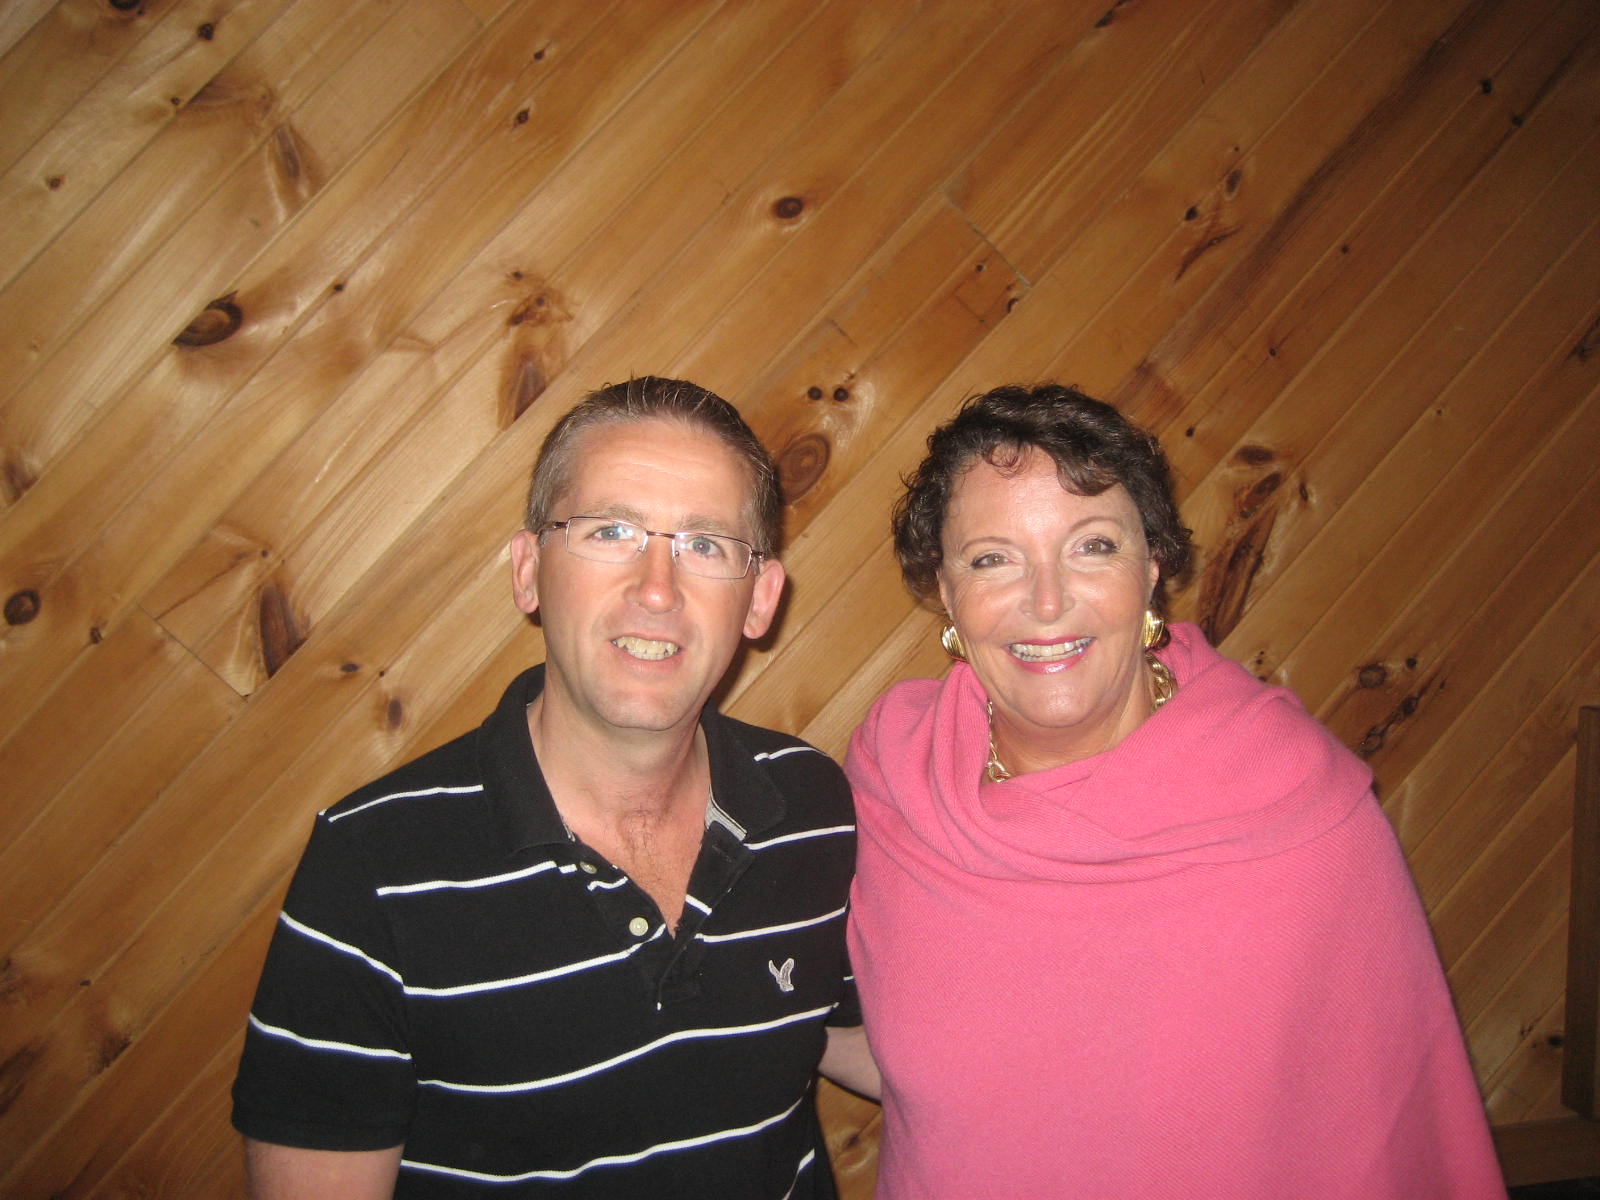 Chris with British Medium Rosemary Altea in 2009.